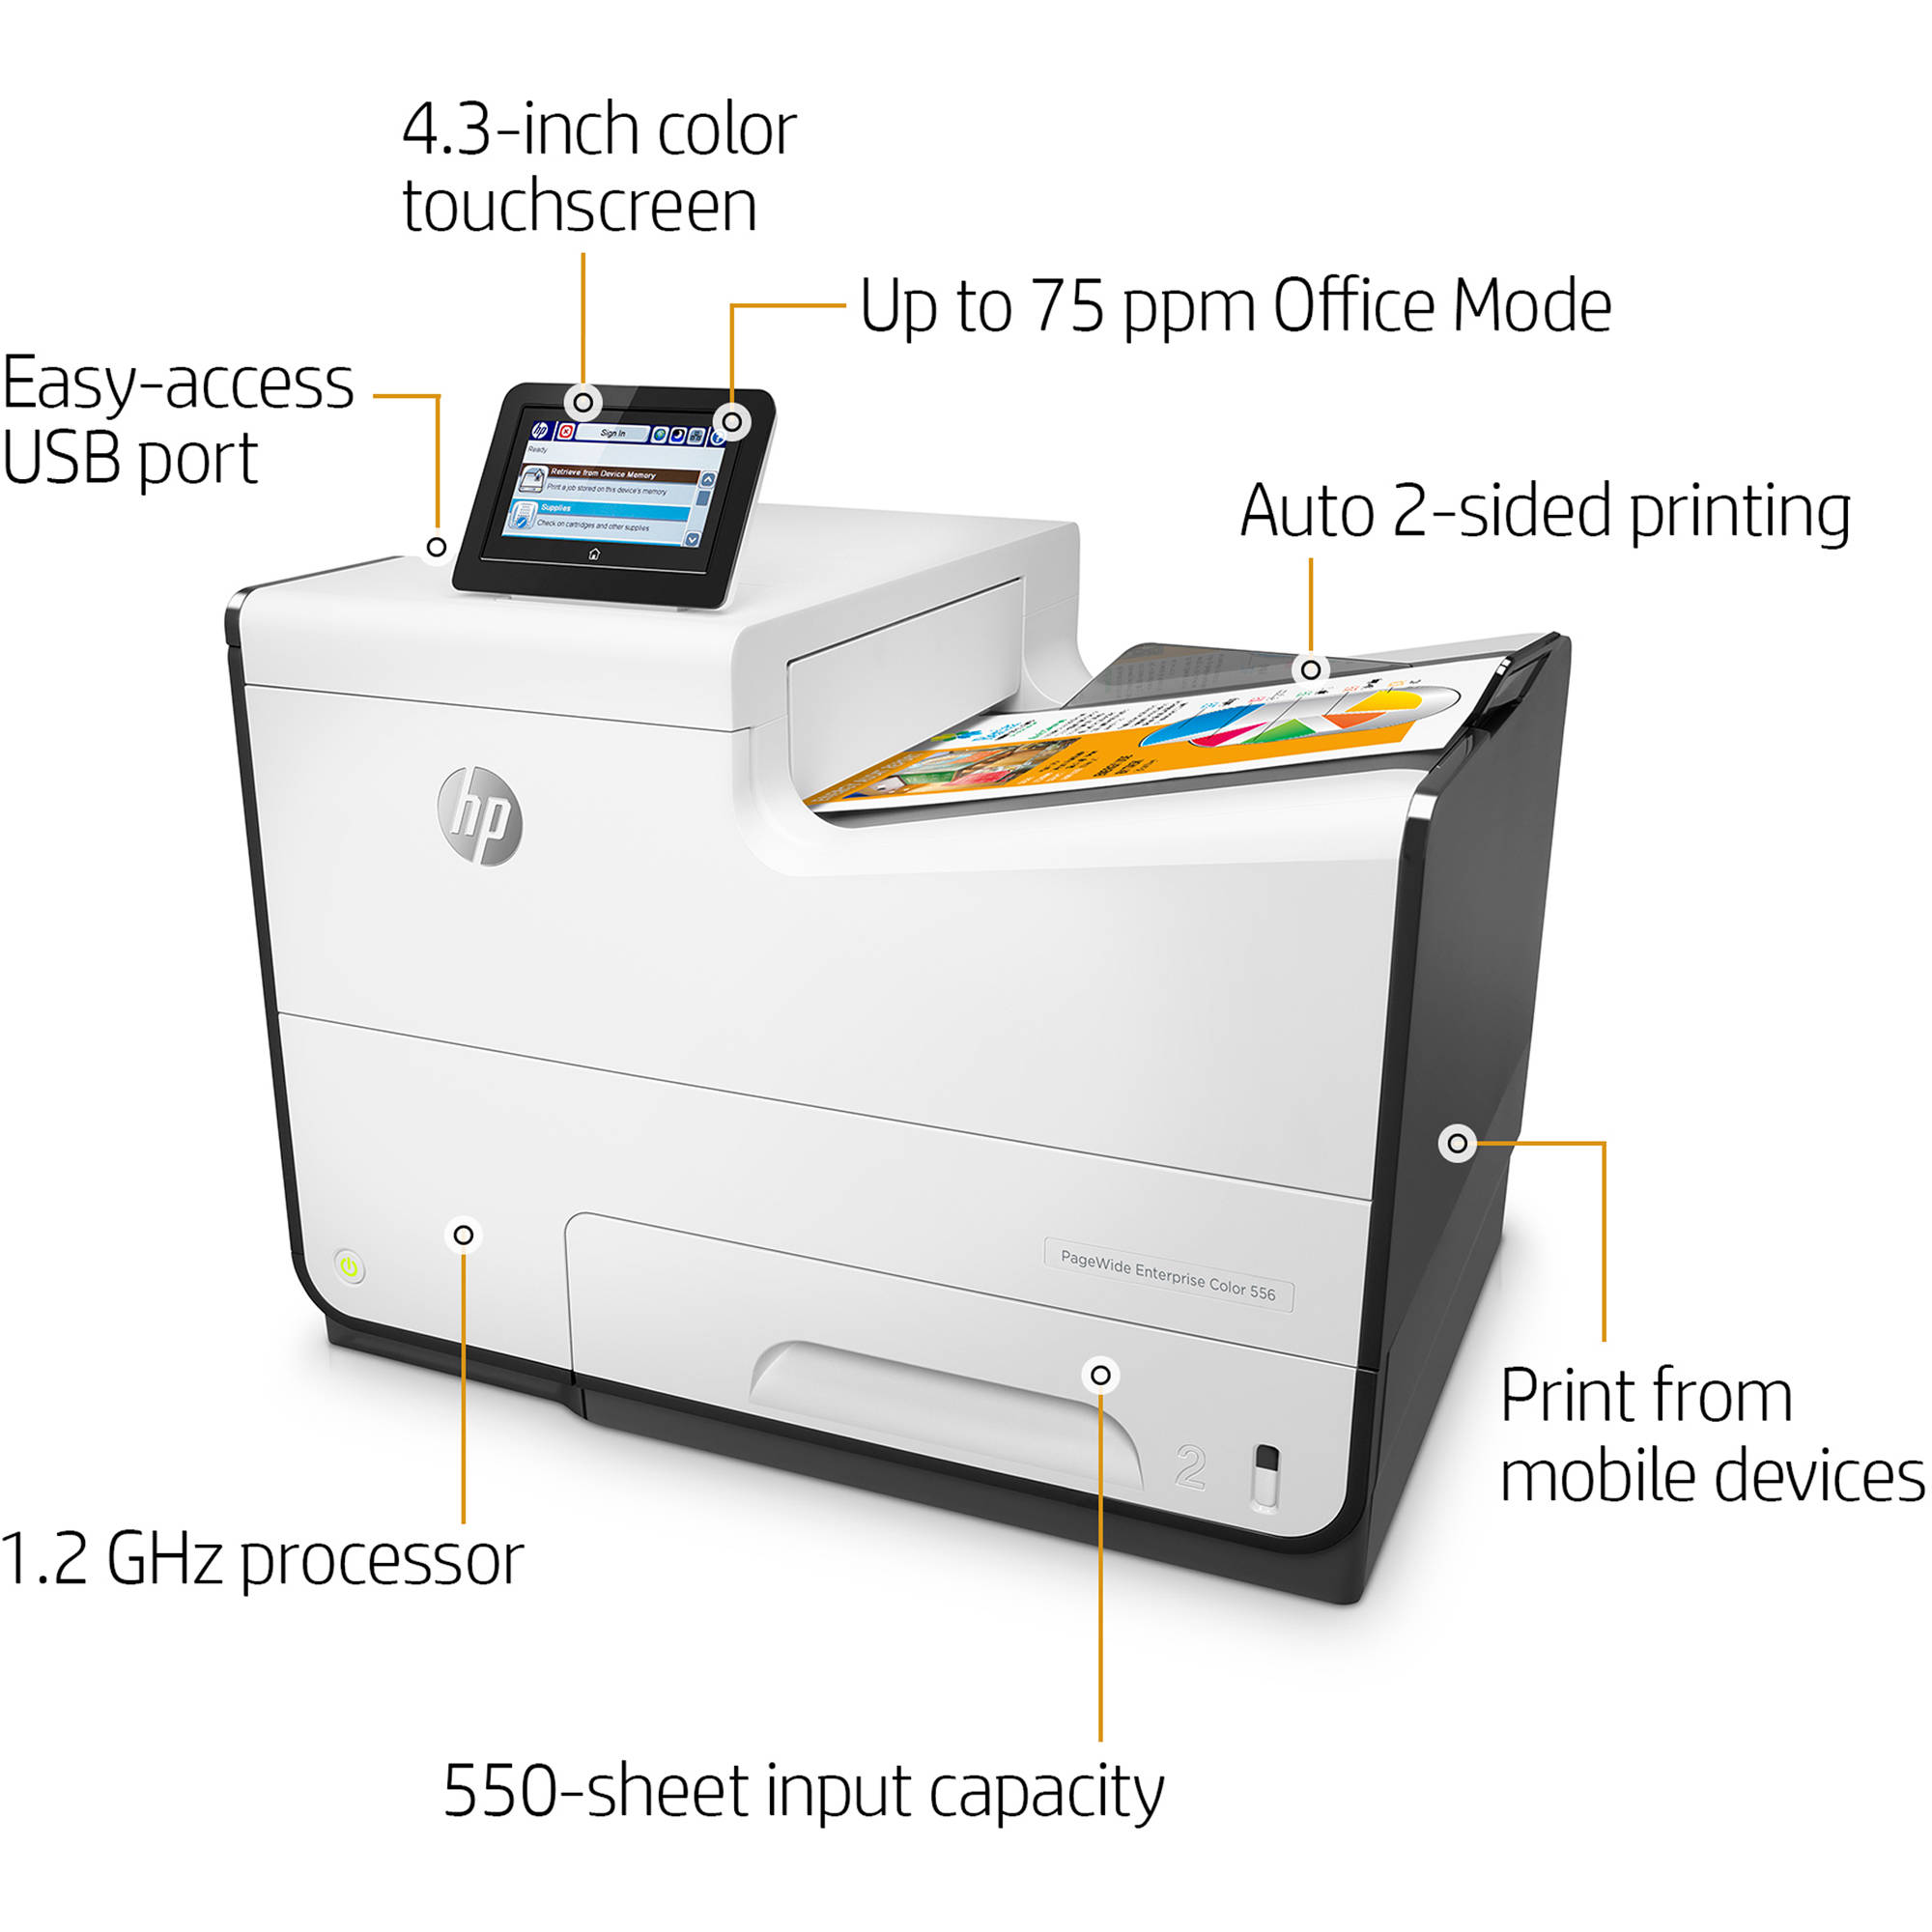 Hp Pagewide Enterprise Color 556dn Inkjet Printer G1w46a B H